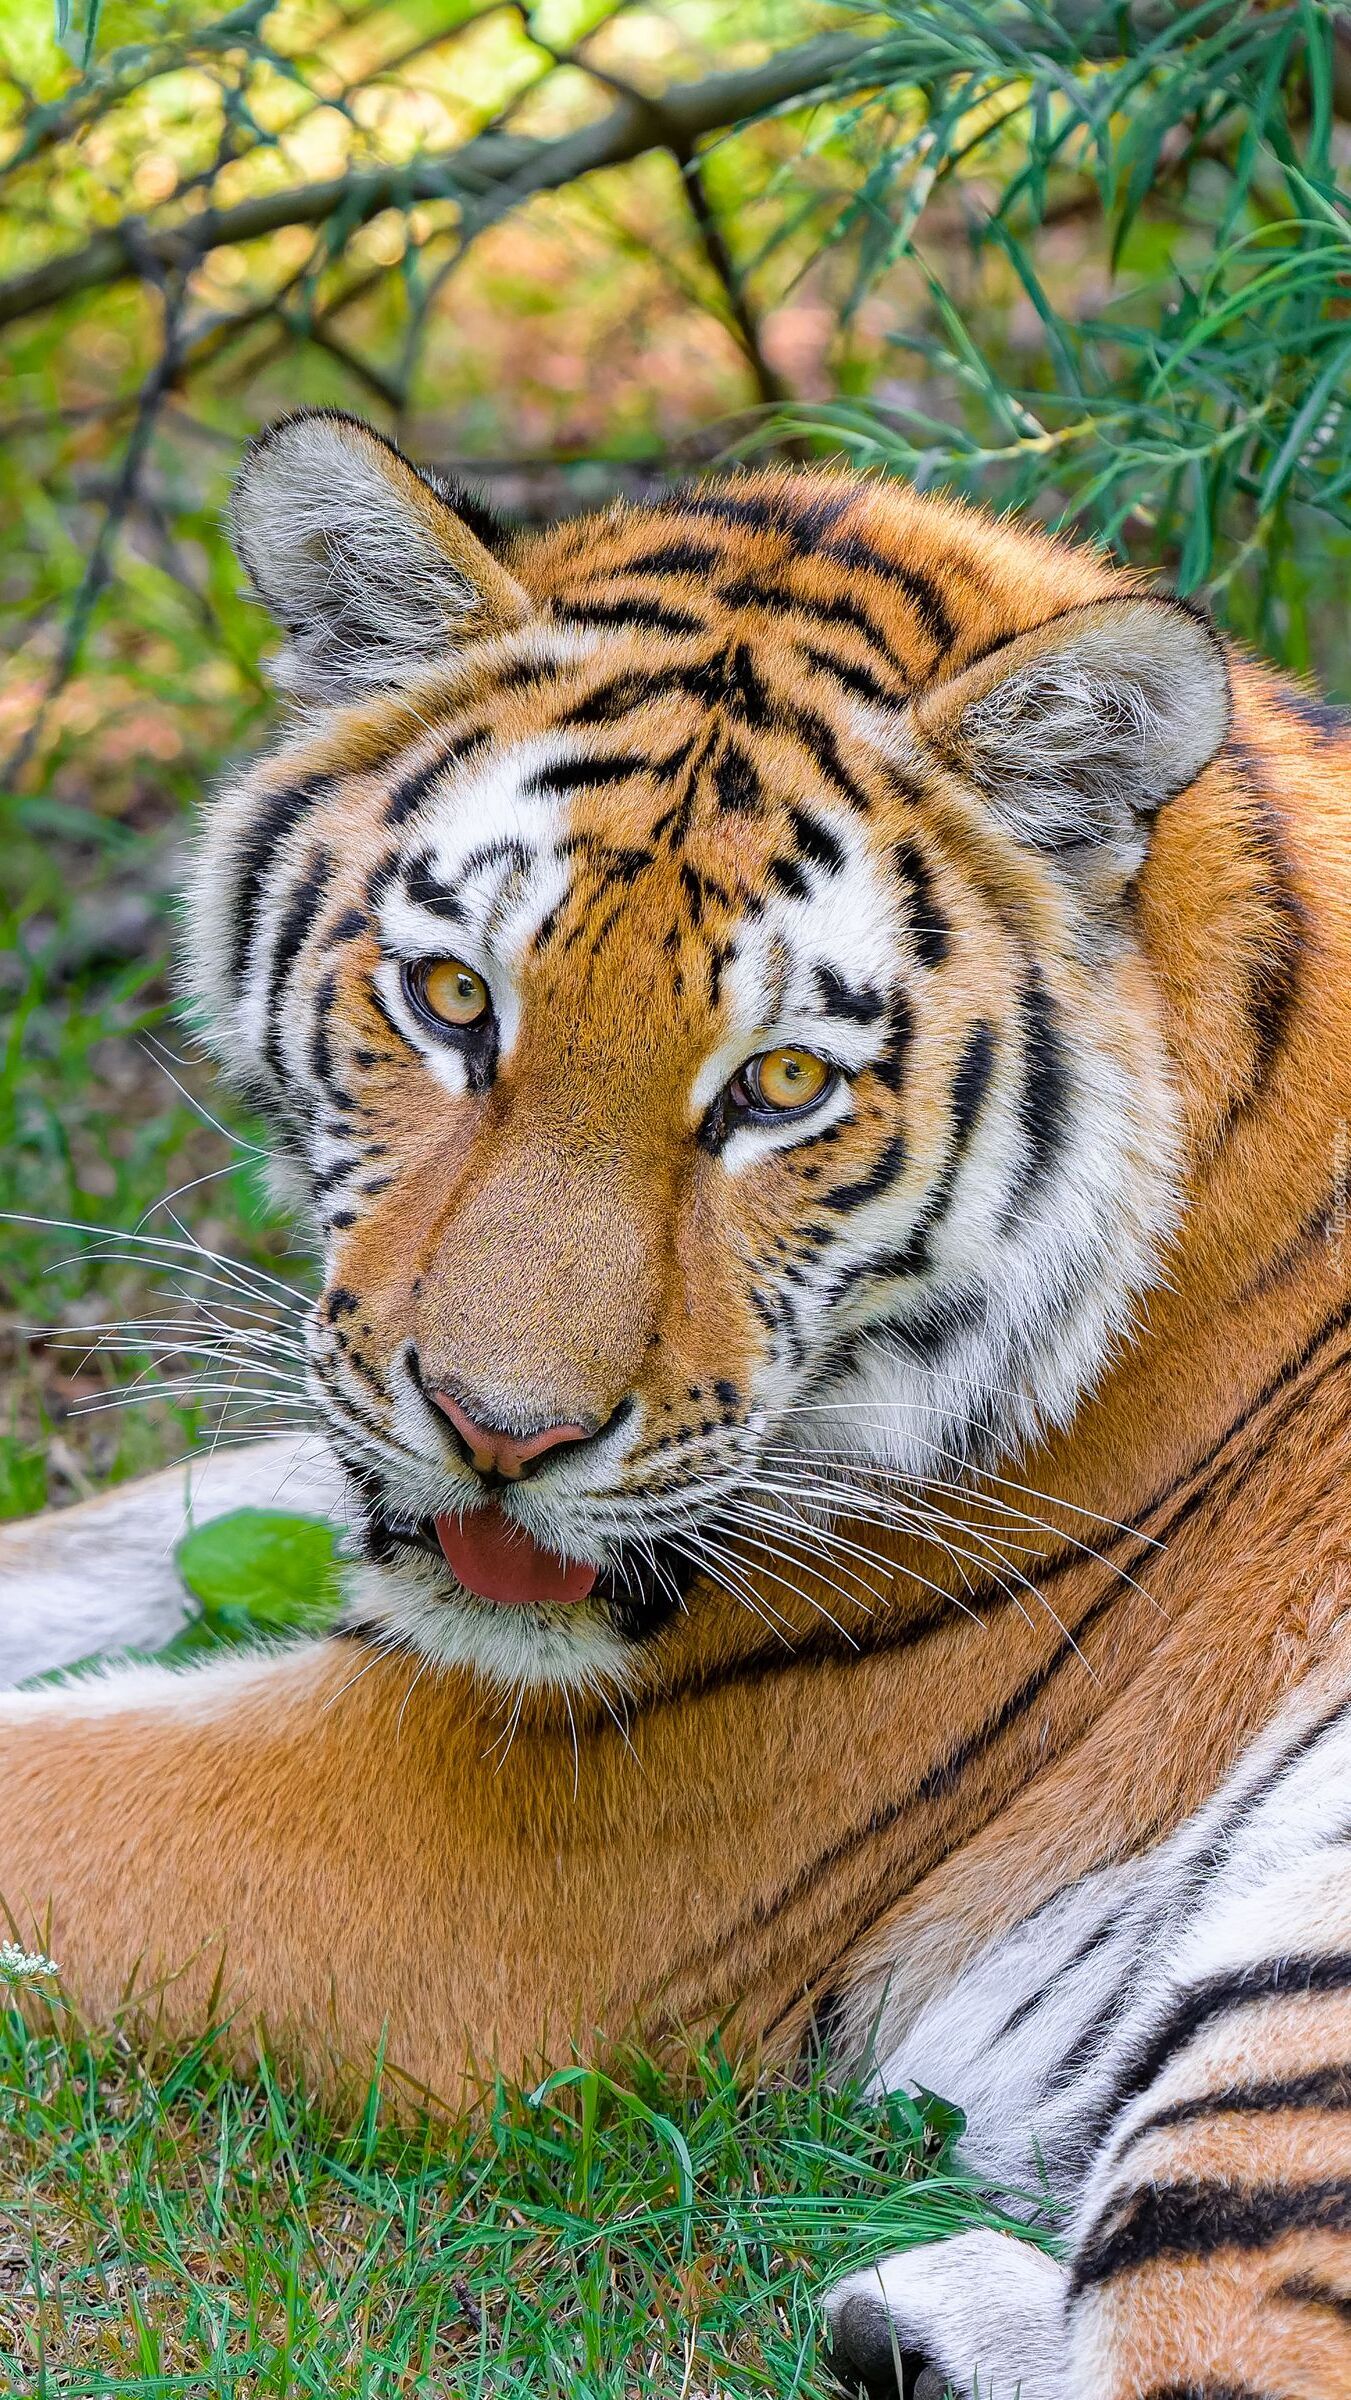 Tygrys syberyjski na trawie